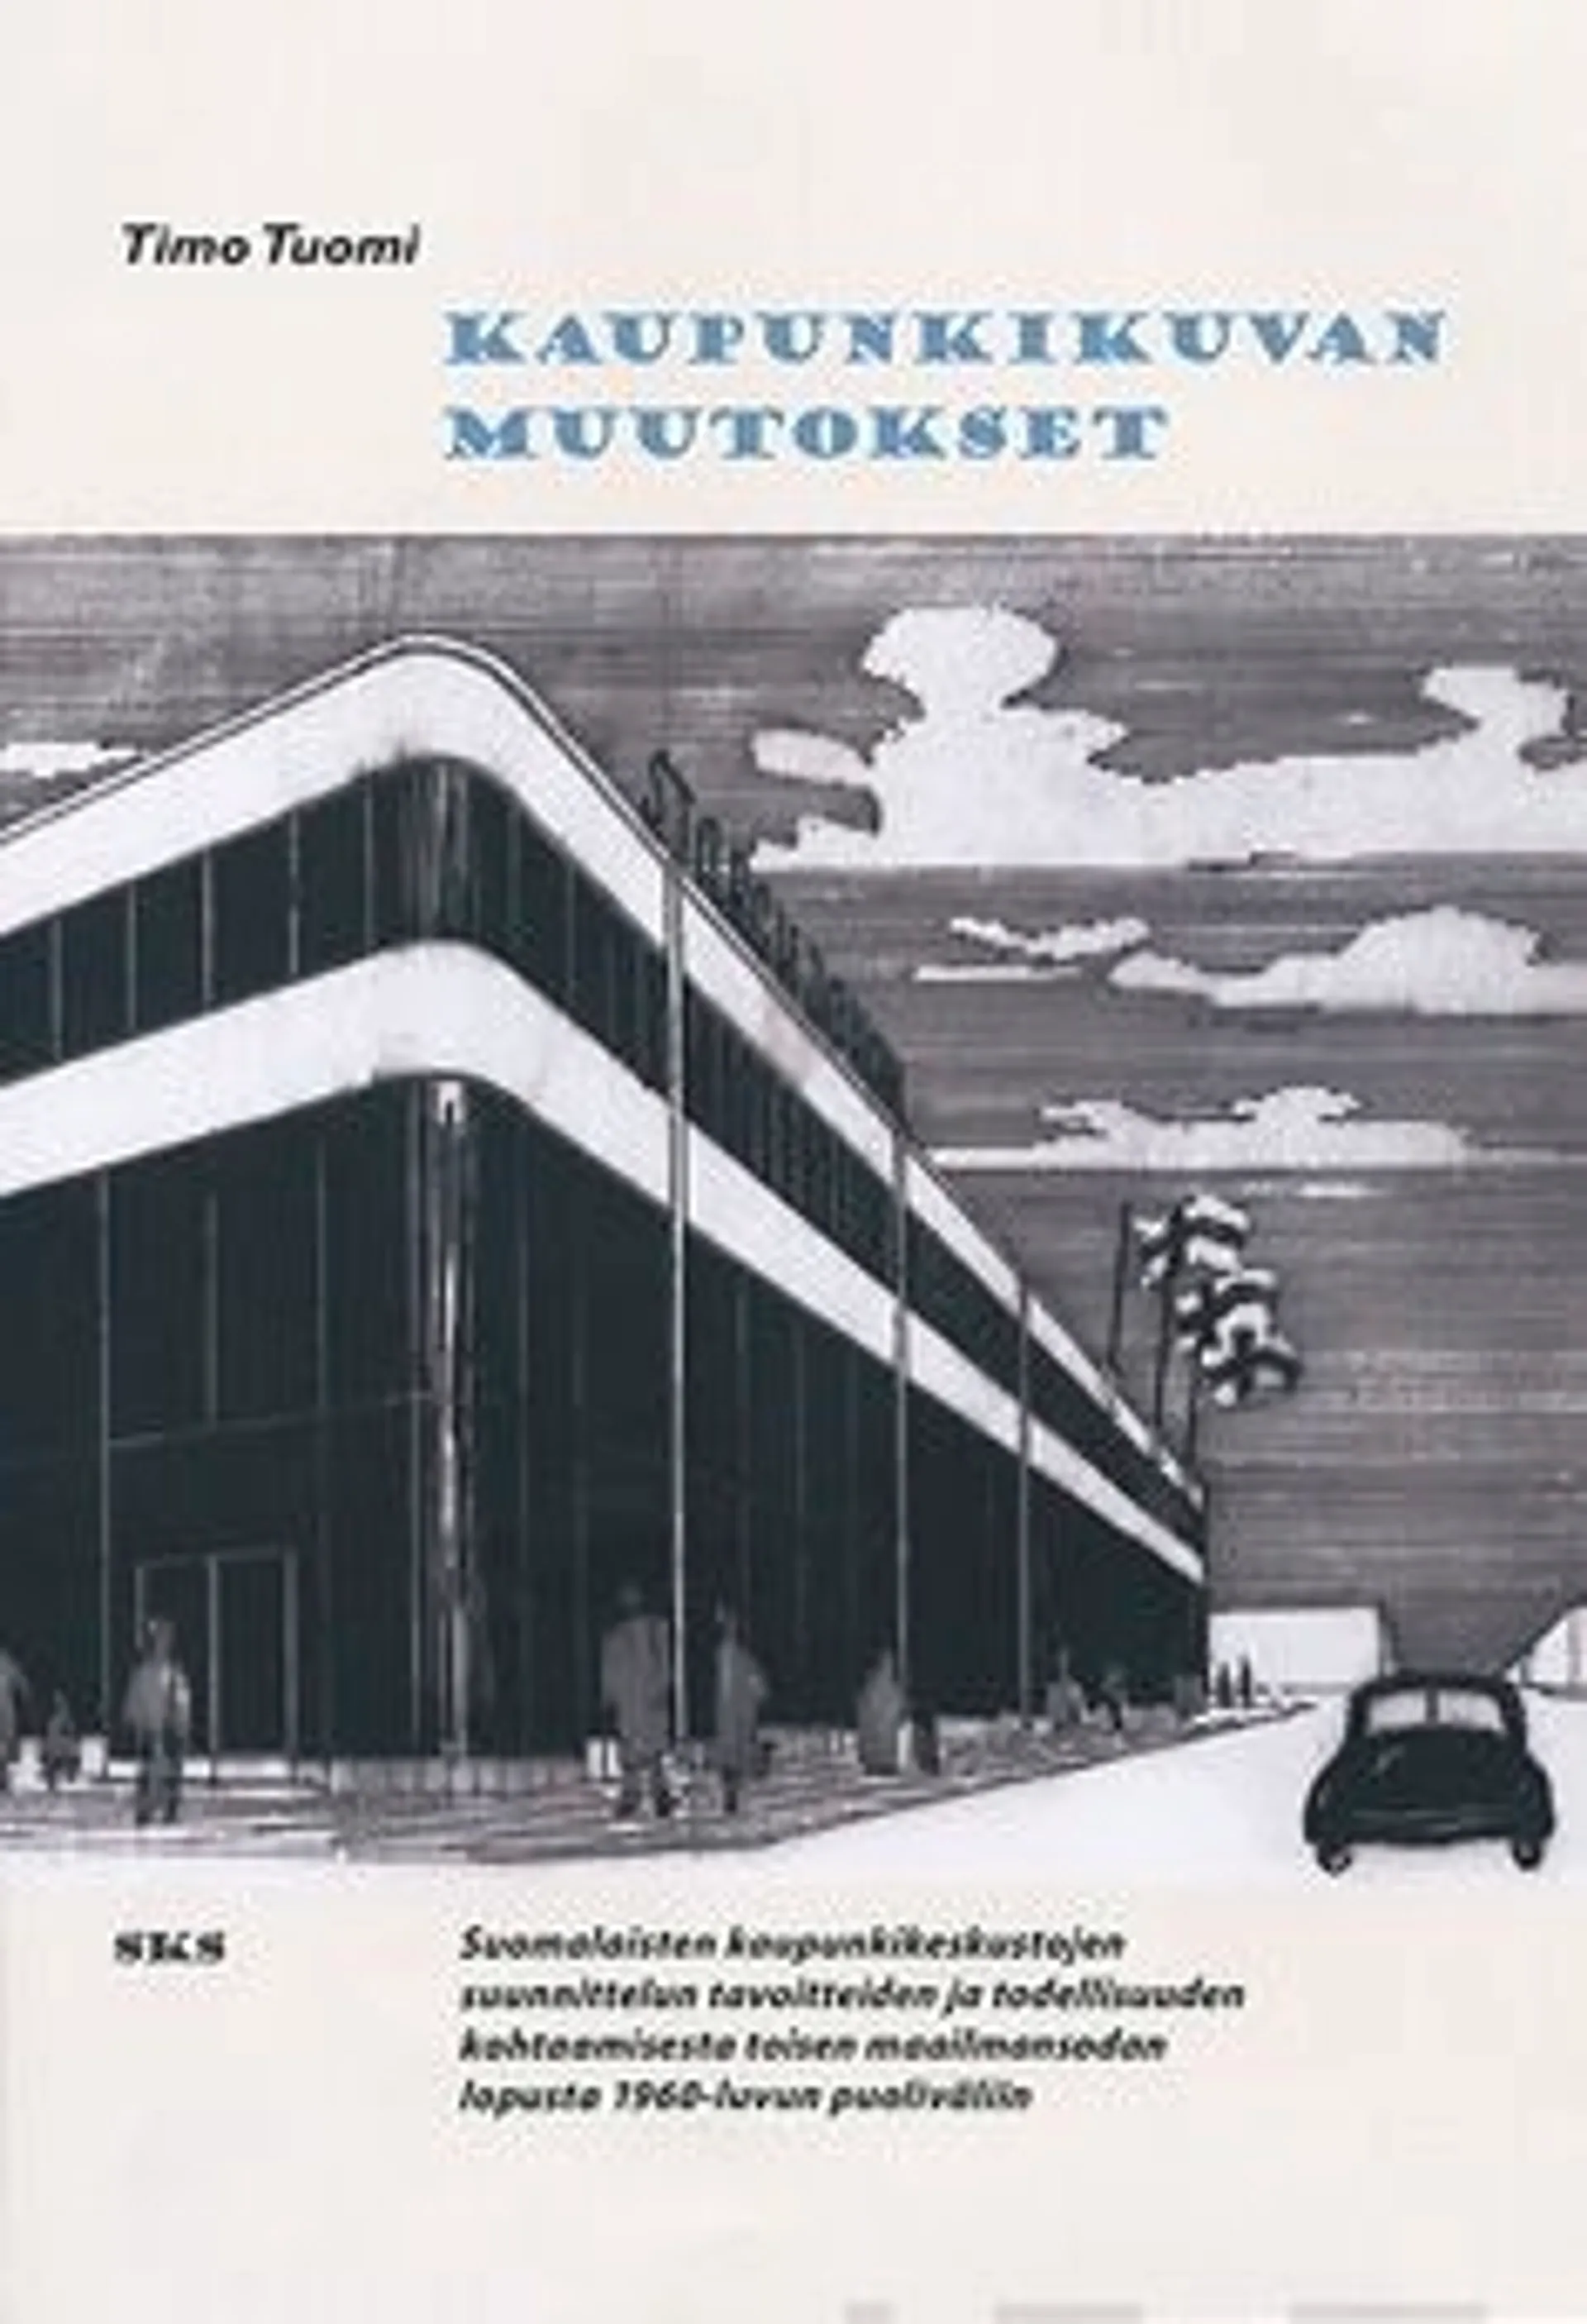 Tuomi, Kaupunkikuvan muutokset - suomalaisten kaupunkikeskustojen suunnittelun tavoitteiden ja todellisuuden kohtaamisesta toisen maailmansodan lopusta 1960-luvun puoliväliin